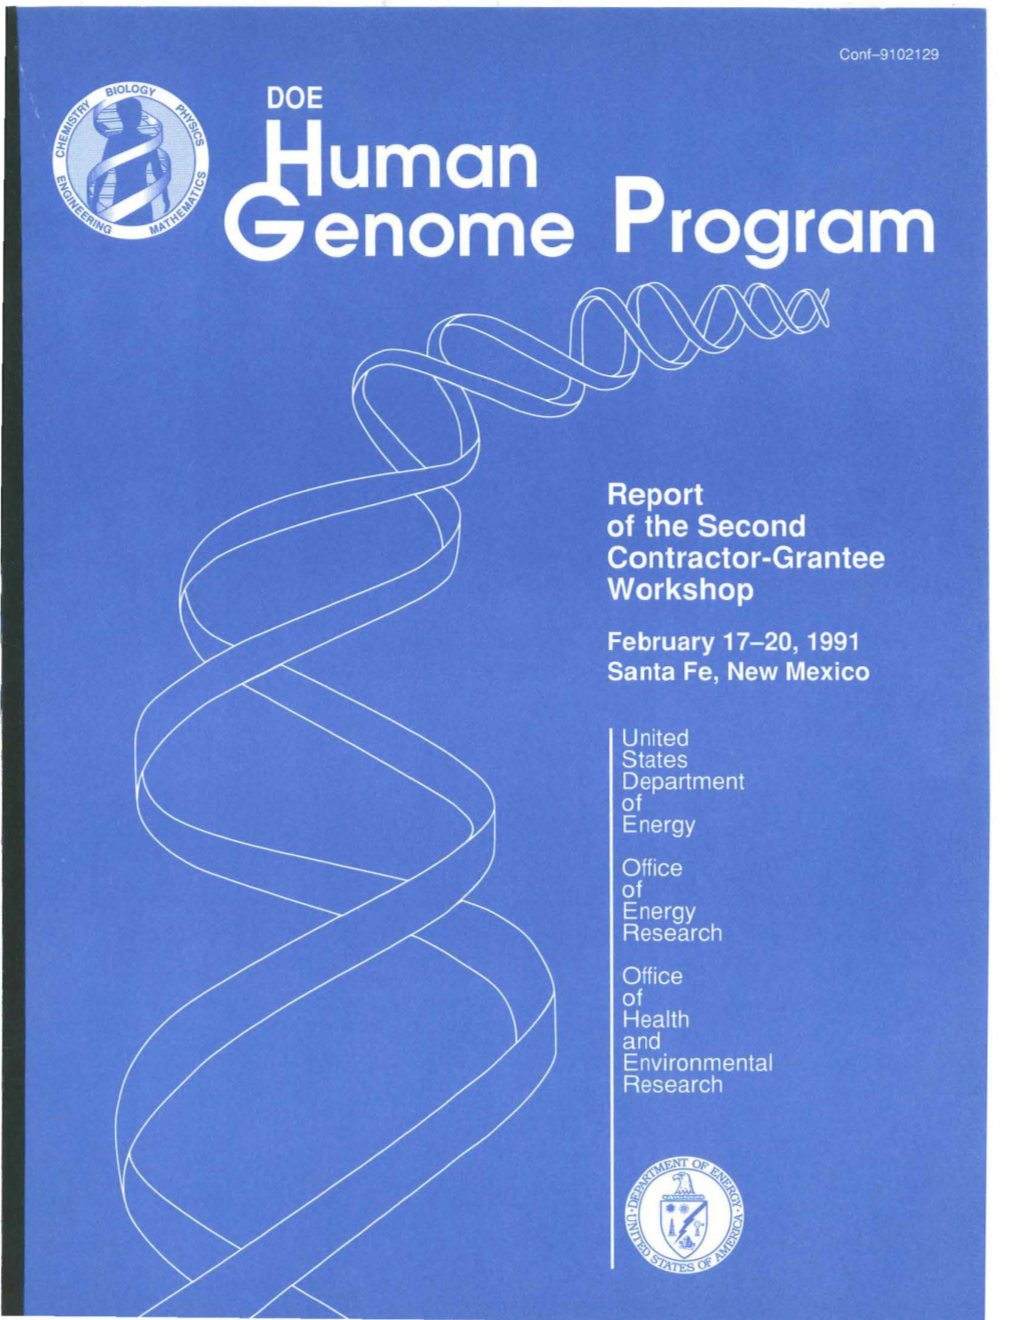 OE Human Genome Program Second Contractor-Grantee Workshop (1991)